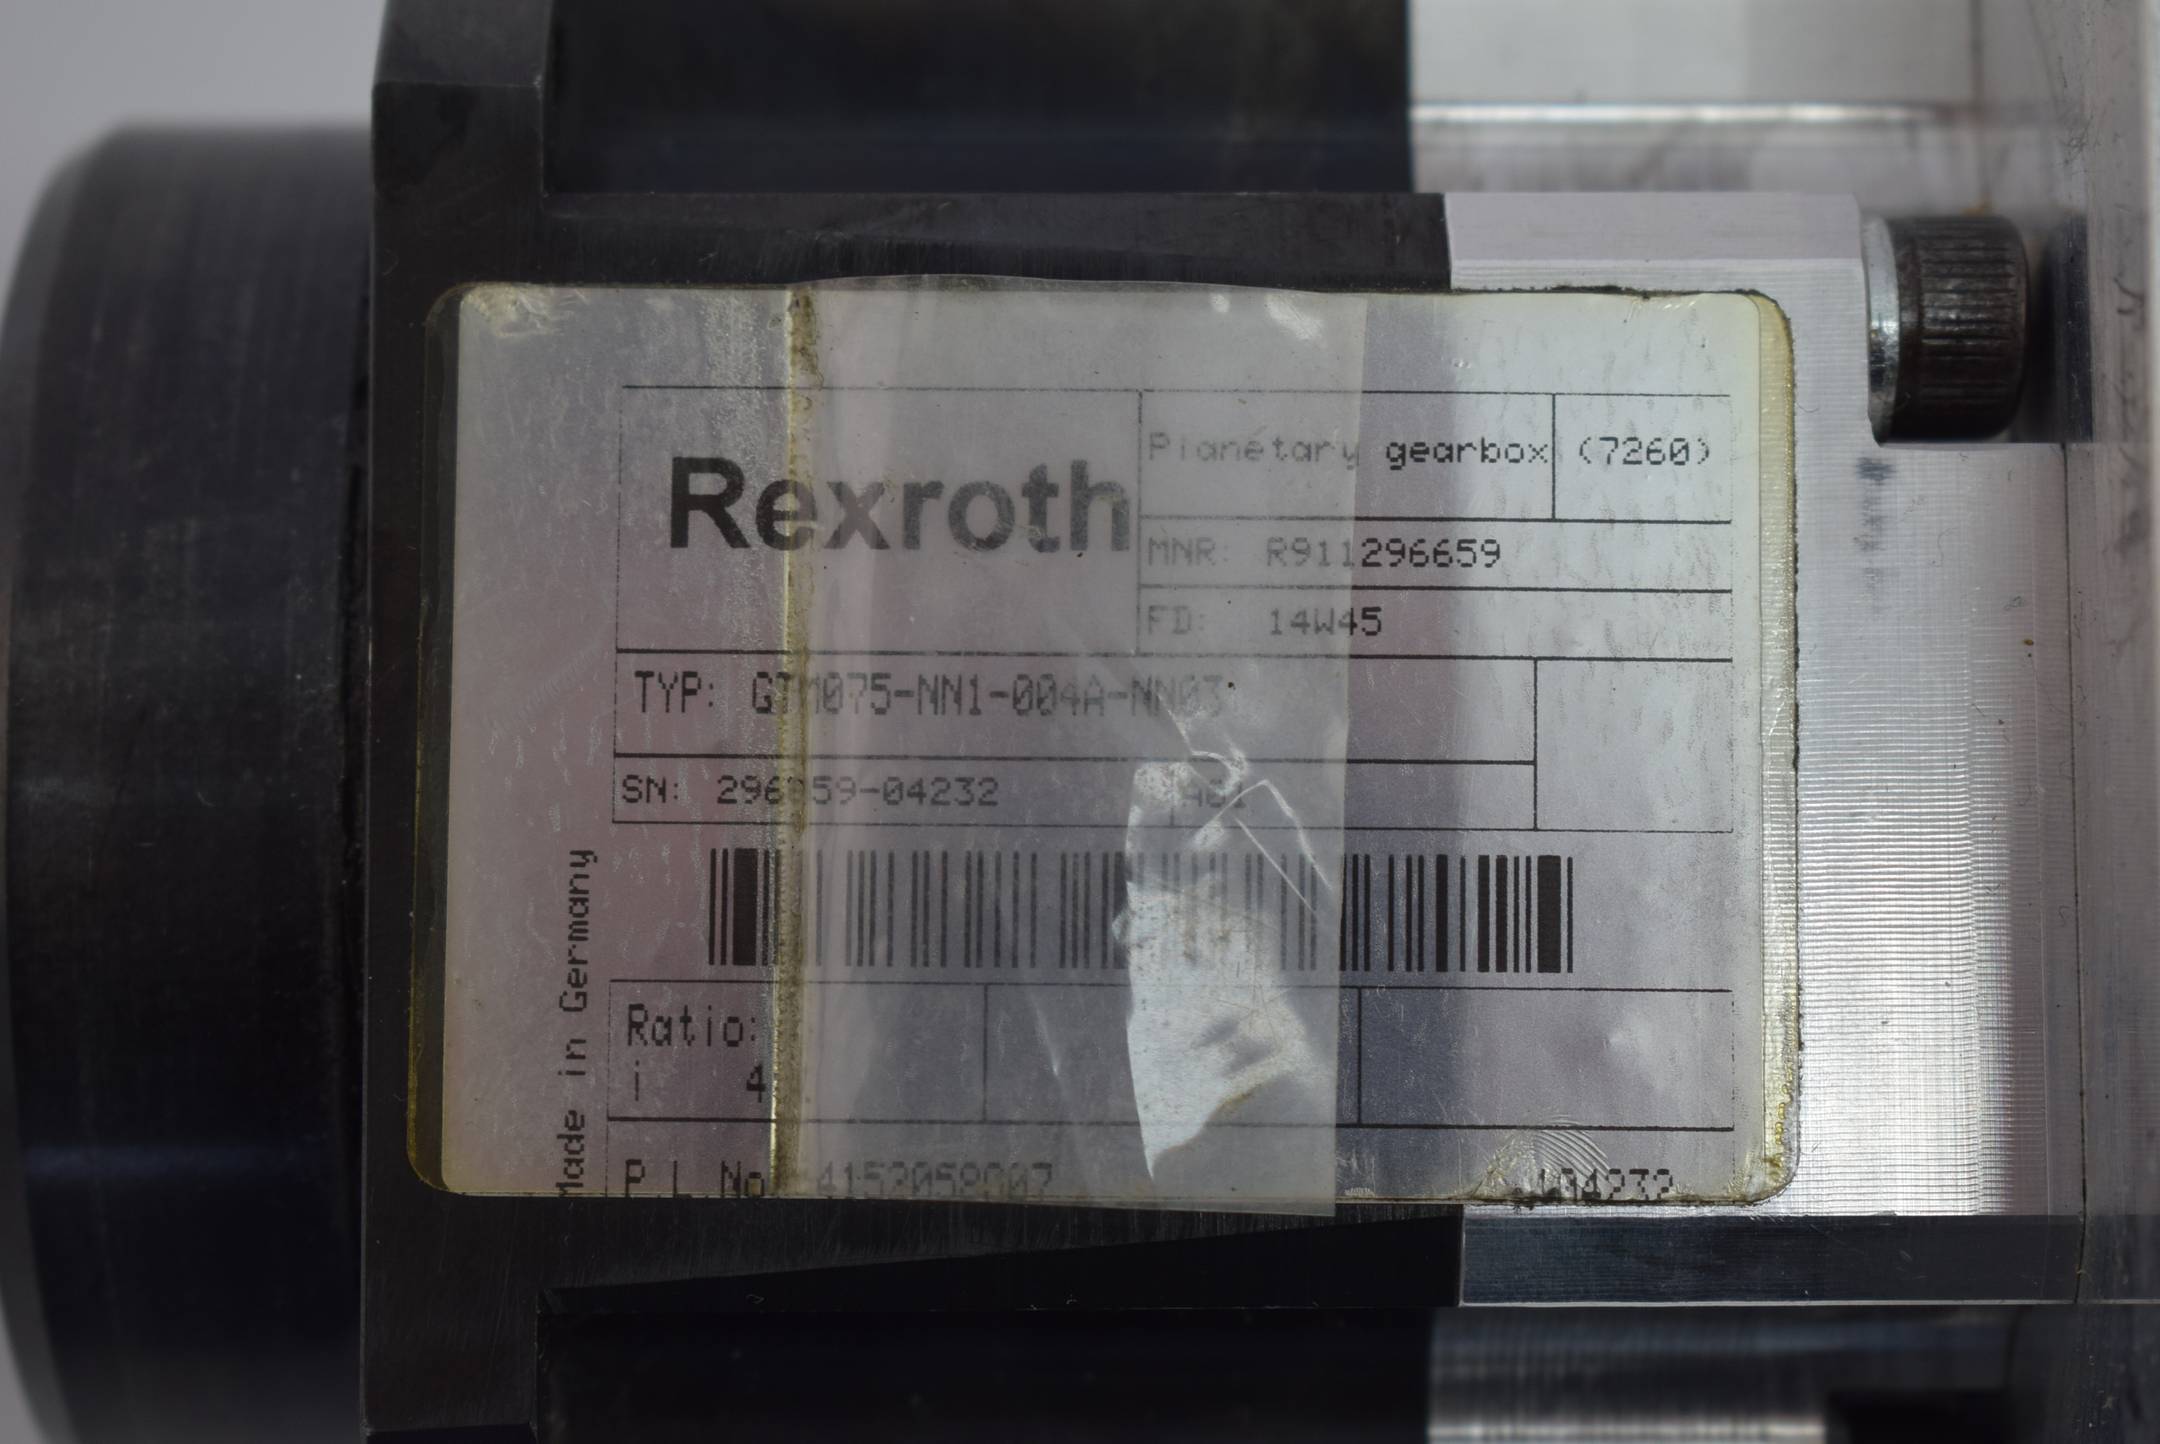 Rexroth Planetory gearbox GTM075-NN1-004A-NN03